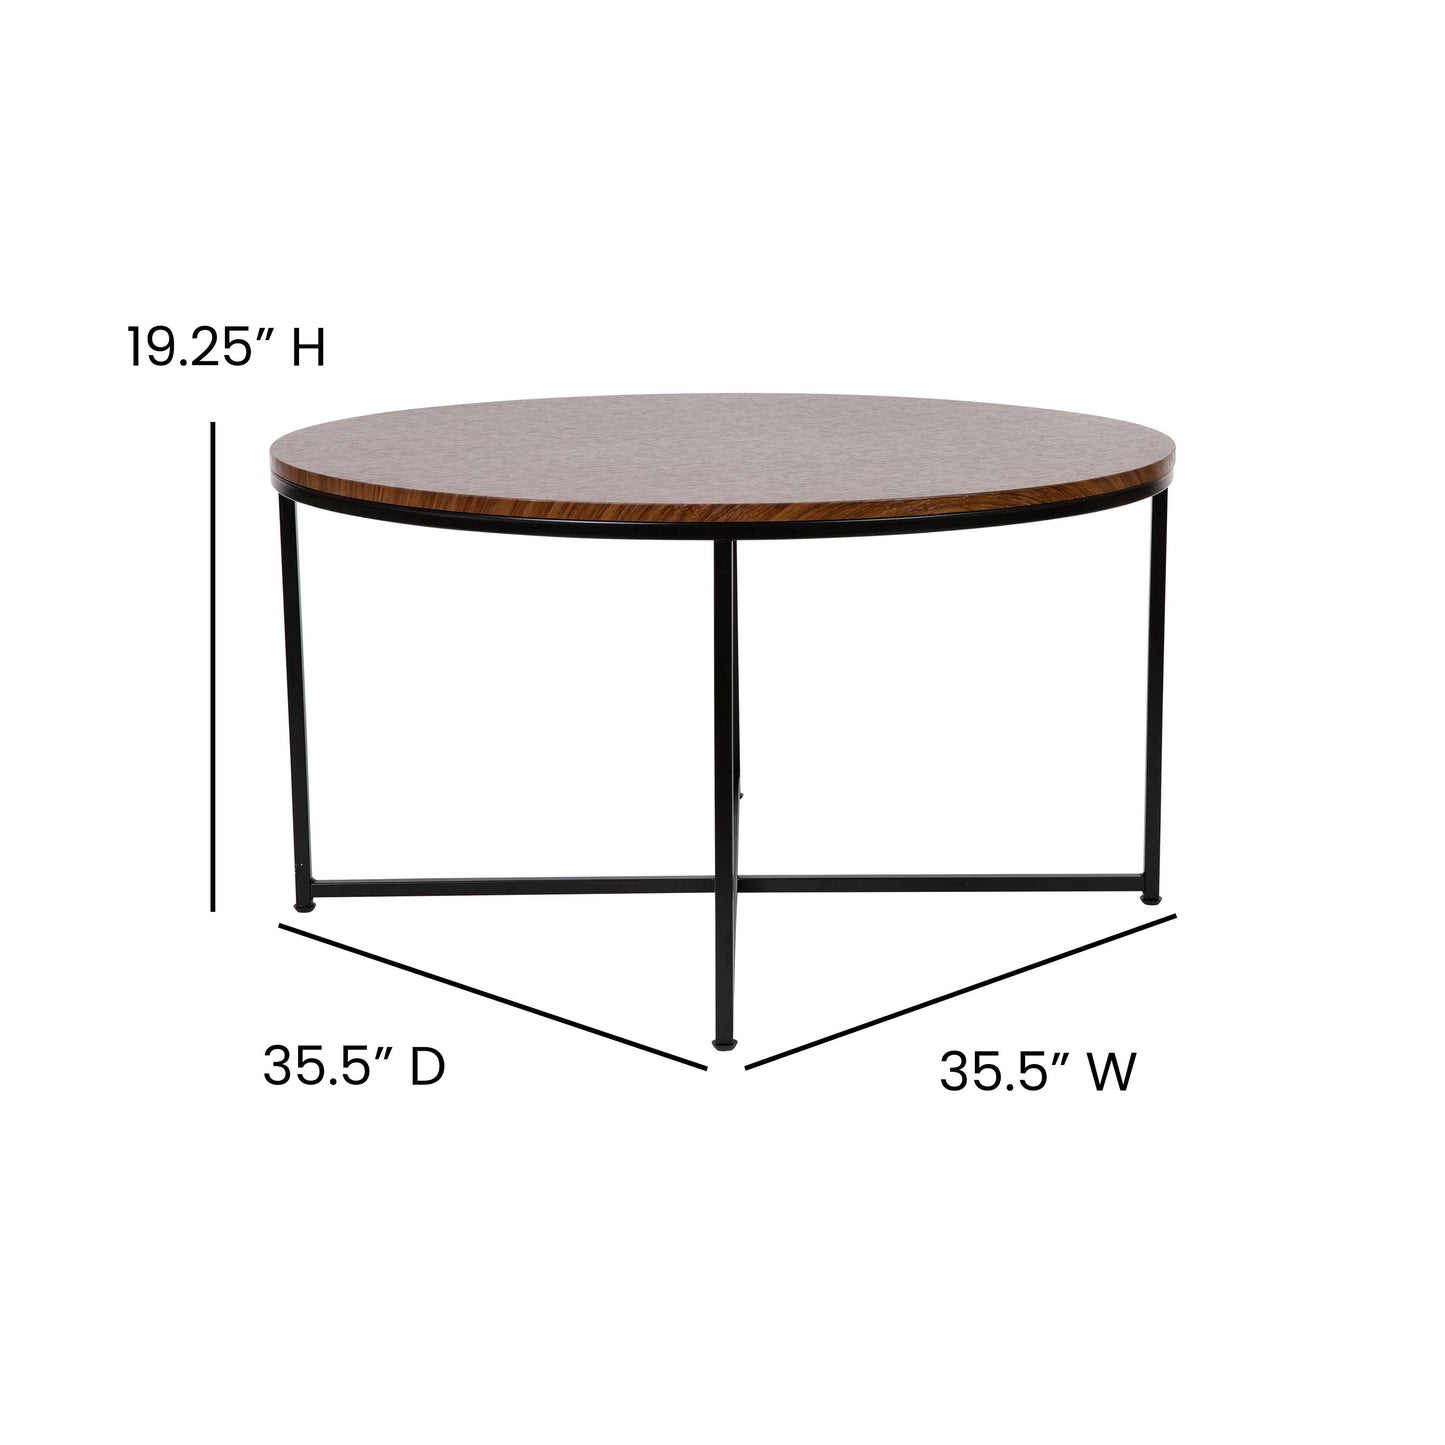 3PC Walnut Coffee Table Set NAN-CEK-1787-WAL-BK-GG